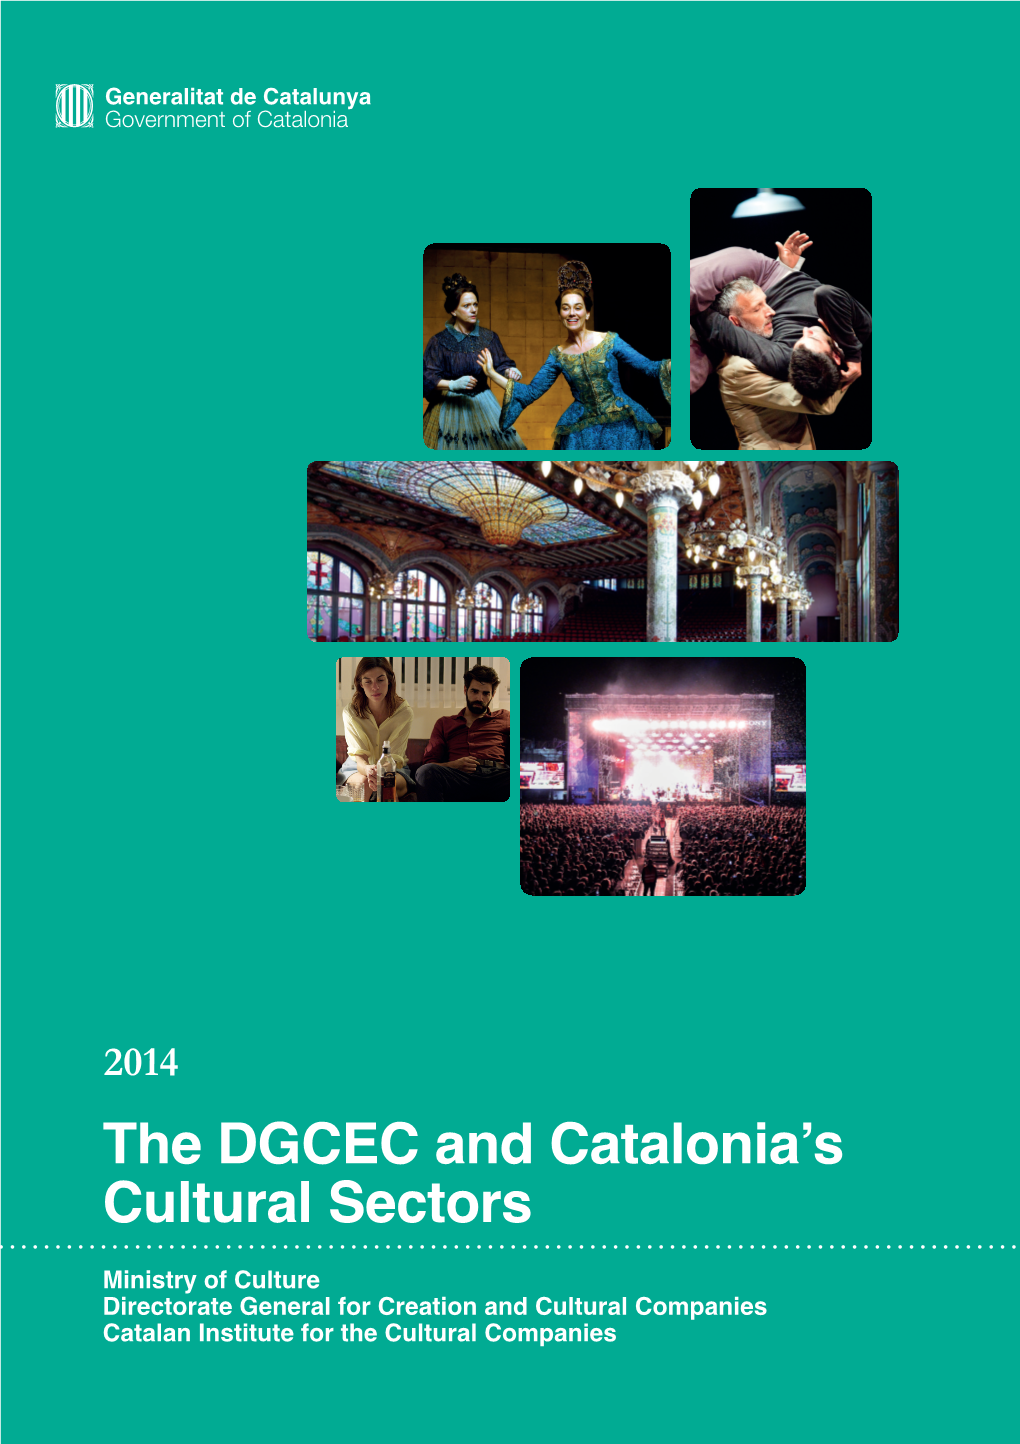 The DGCEC and Catalonia's Cultural Sectors